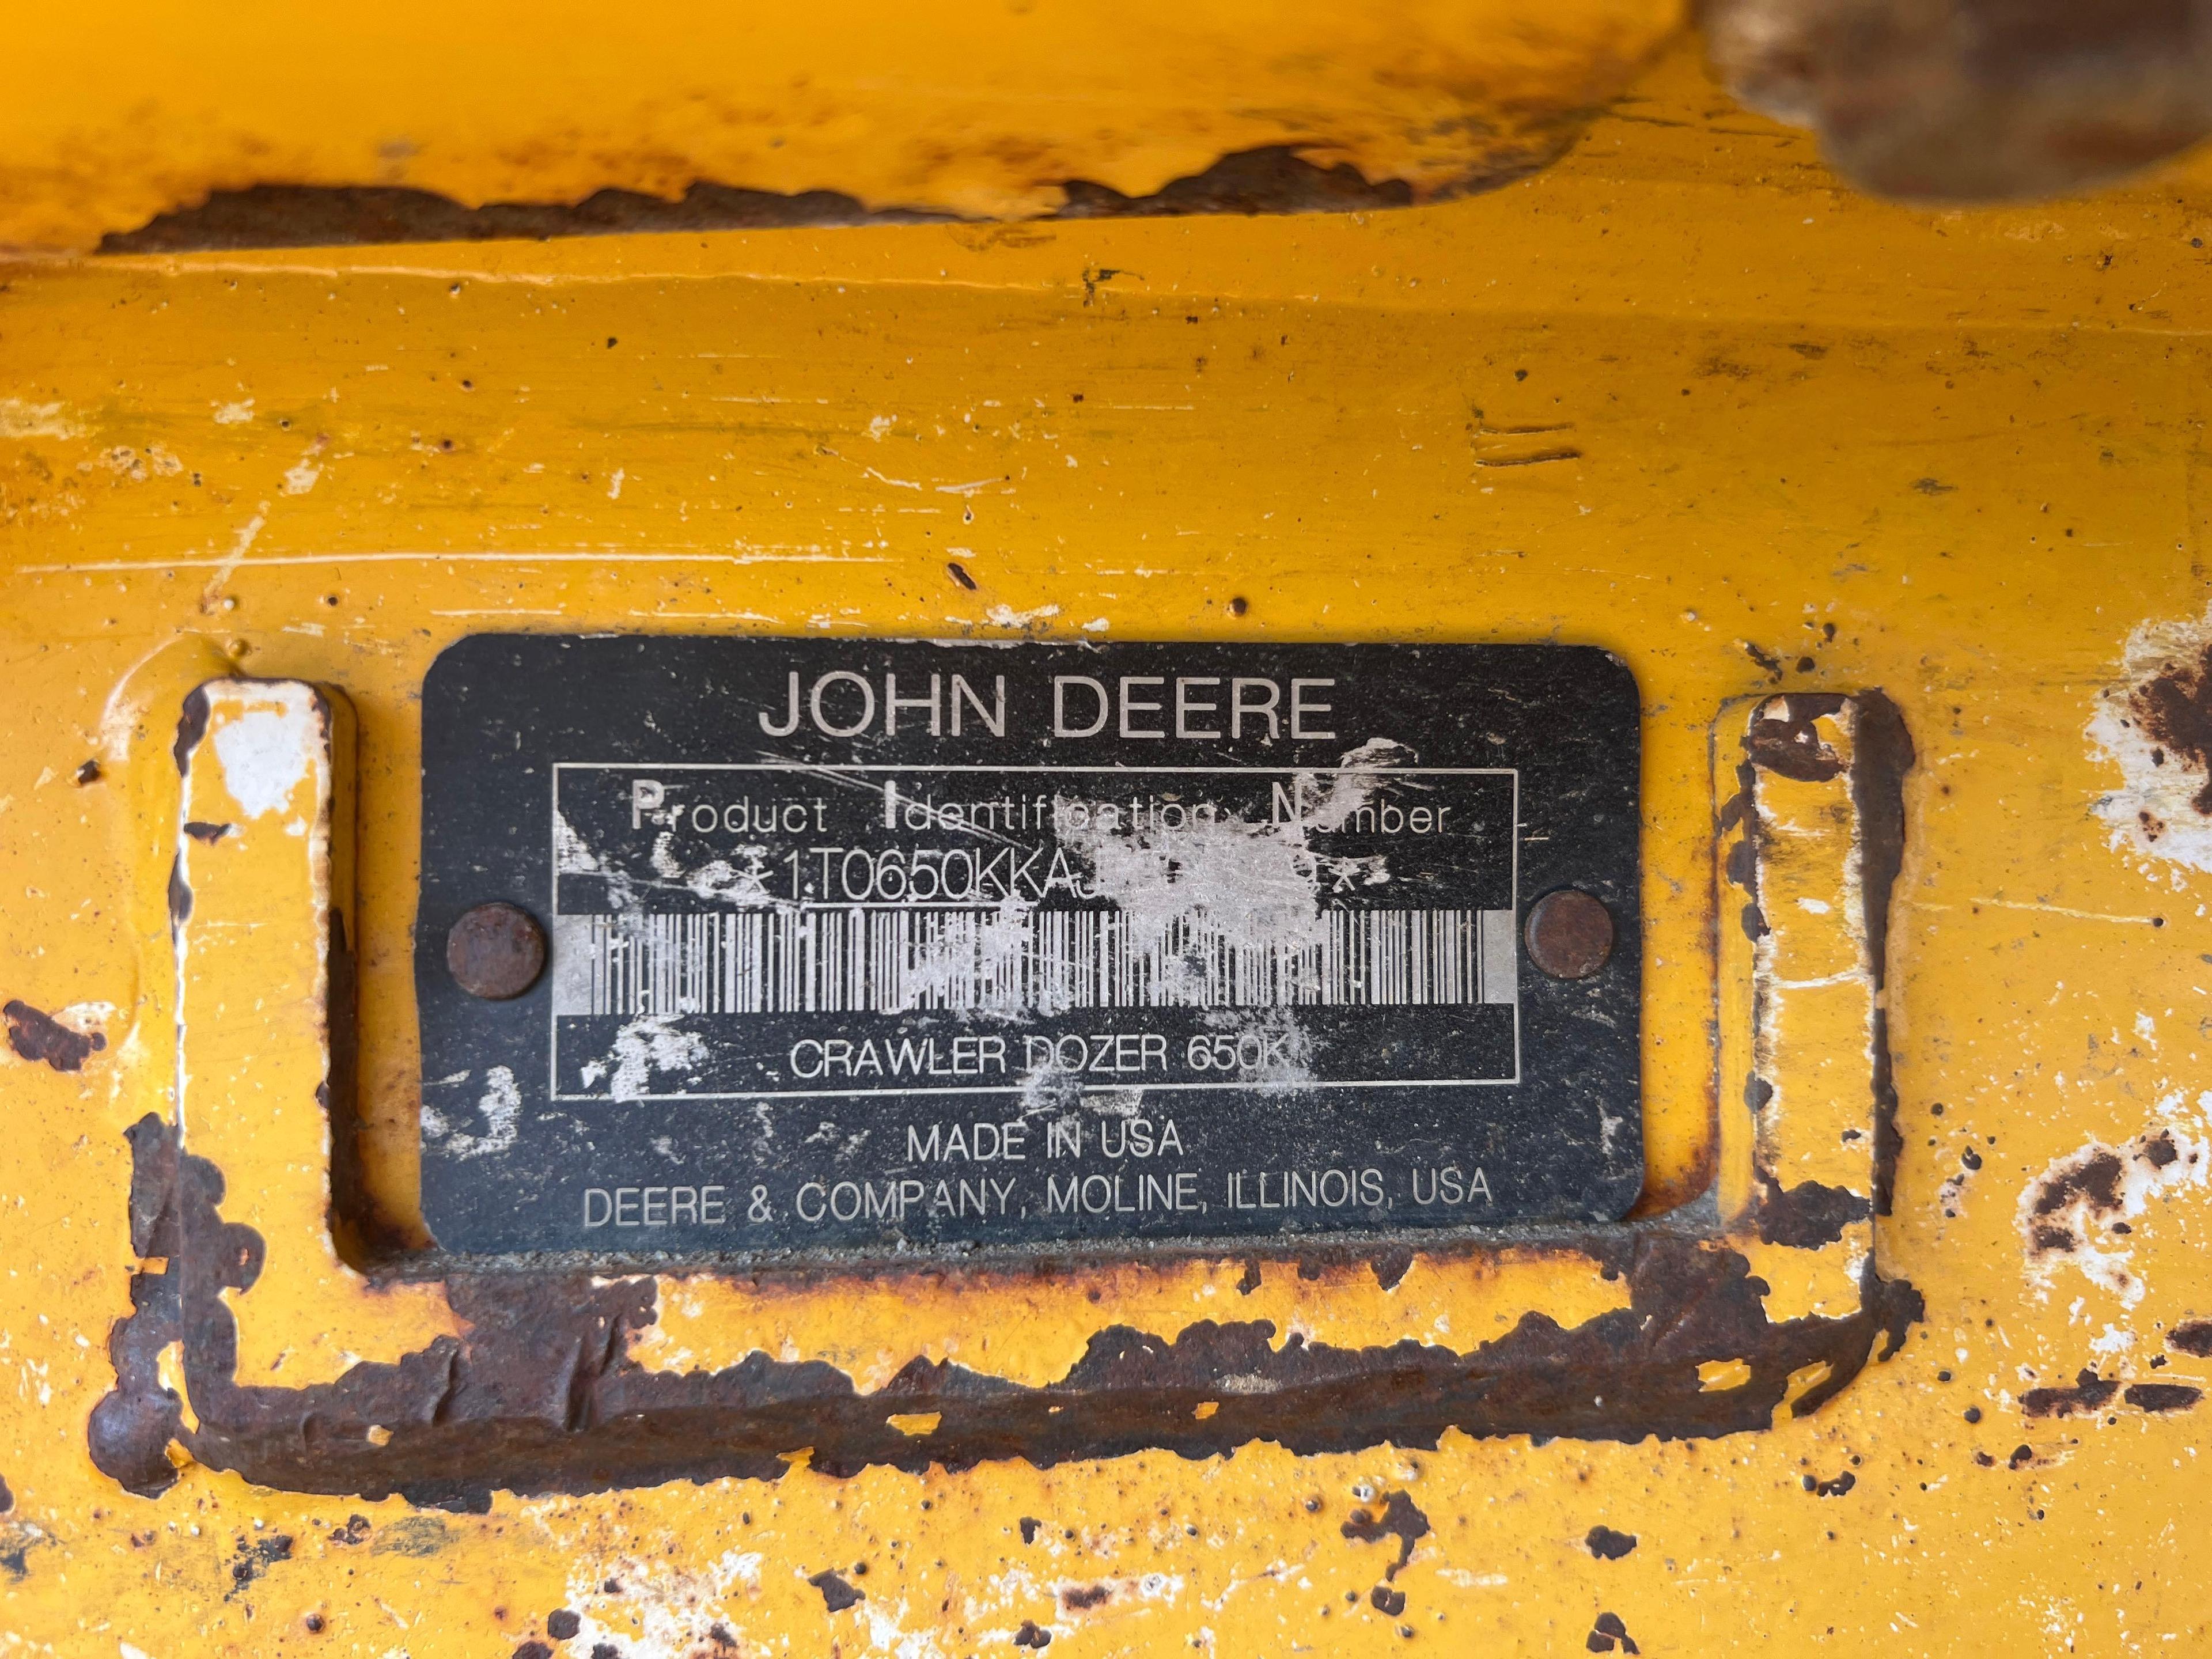 2019 JOHN DEERE 650KLGP CRAWLER TRACTOR SN:AJF339239 powered by John Deere diesel engine, equipped